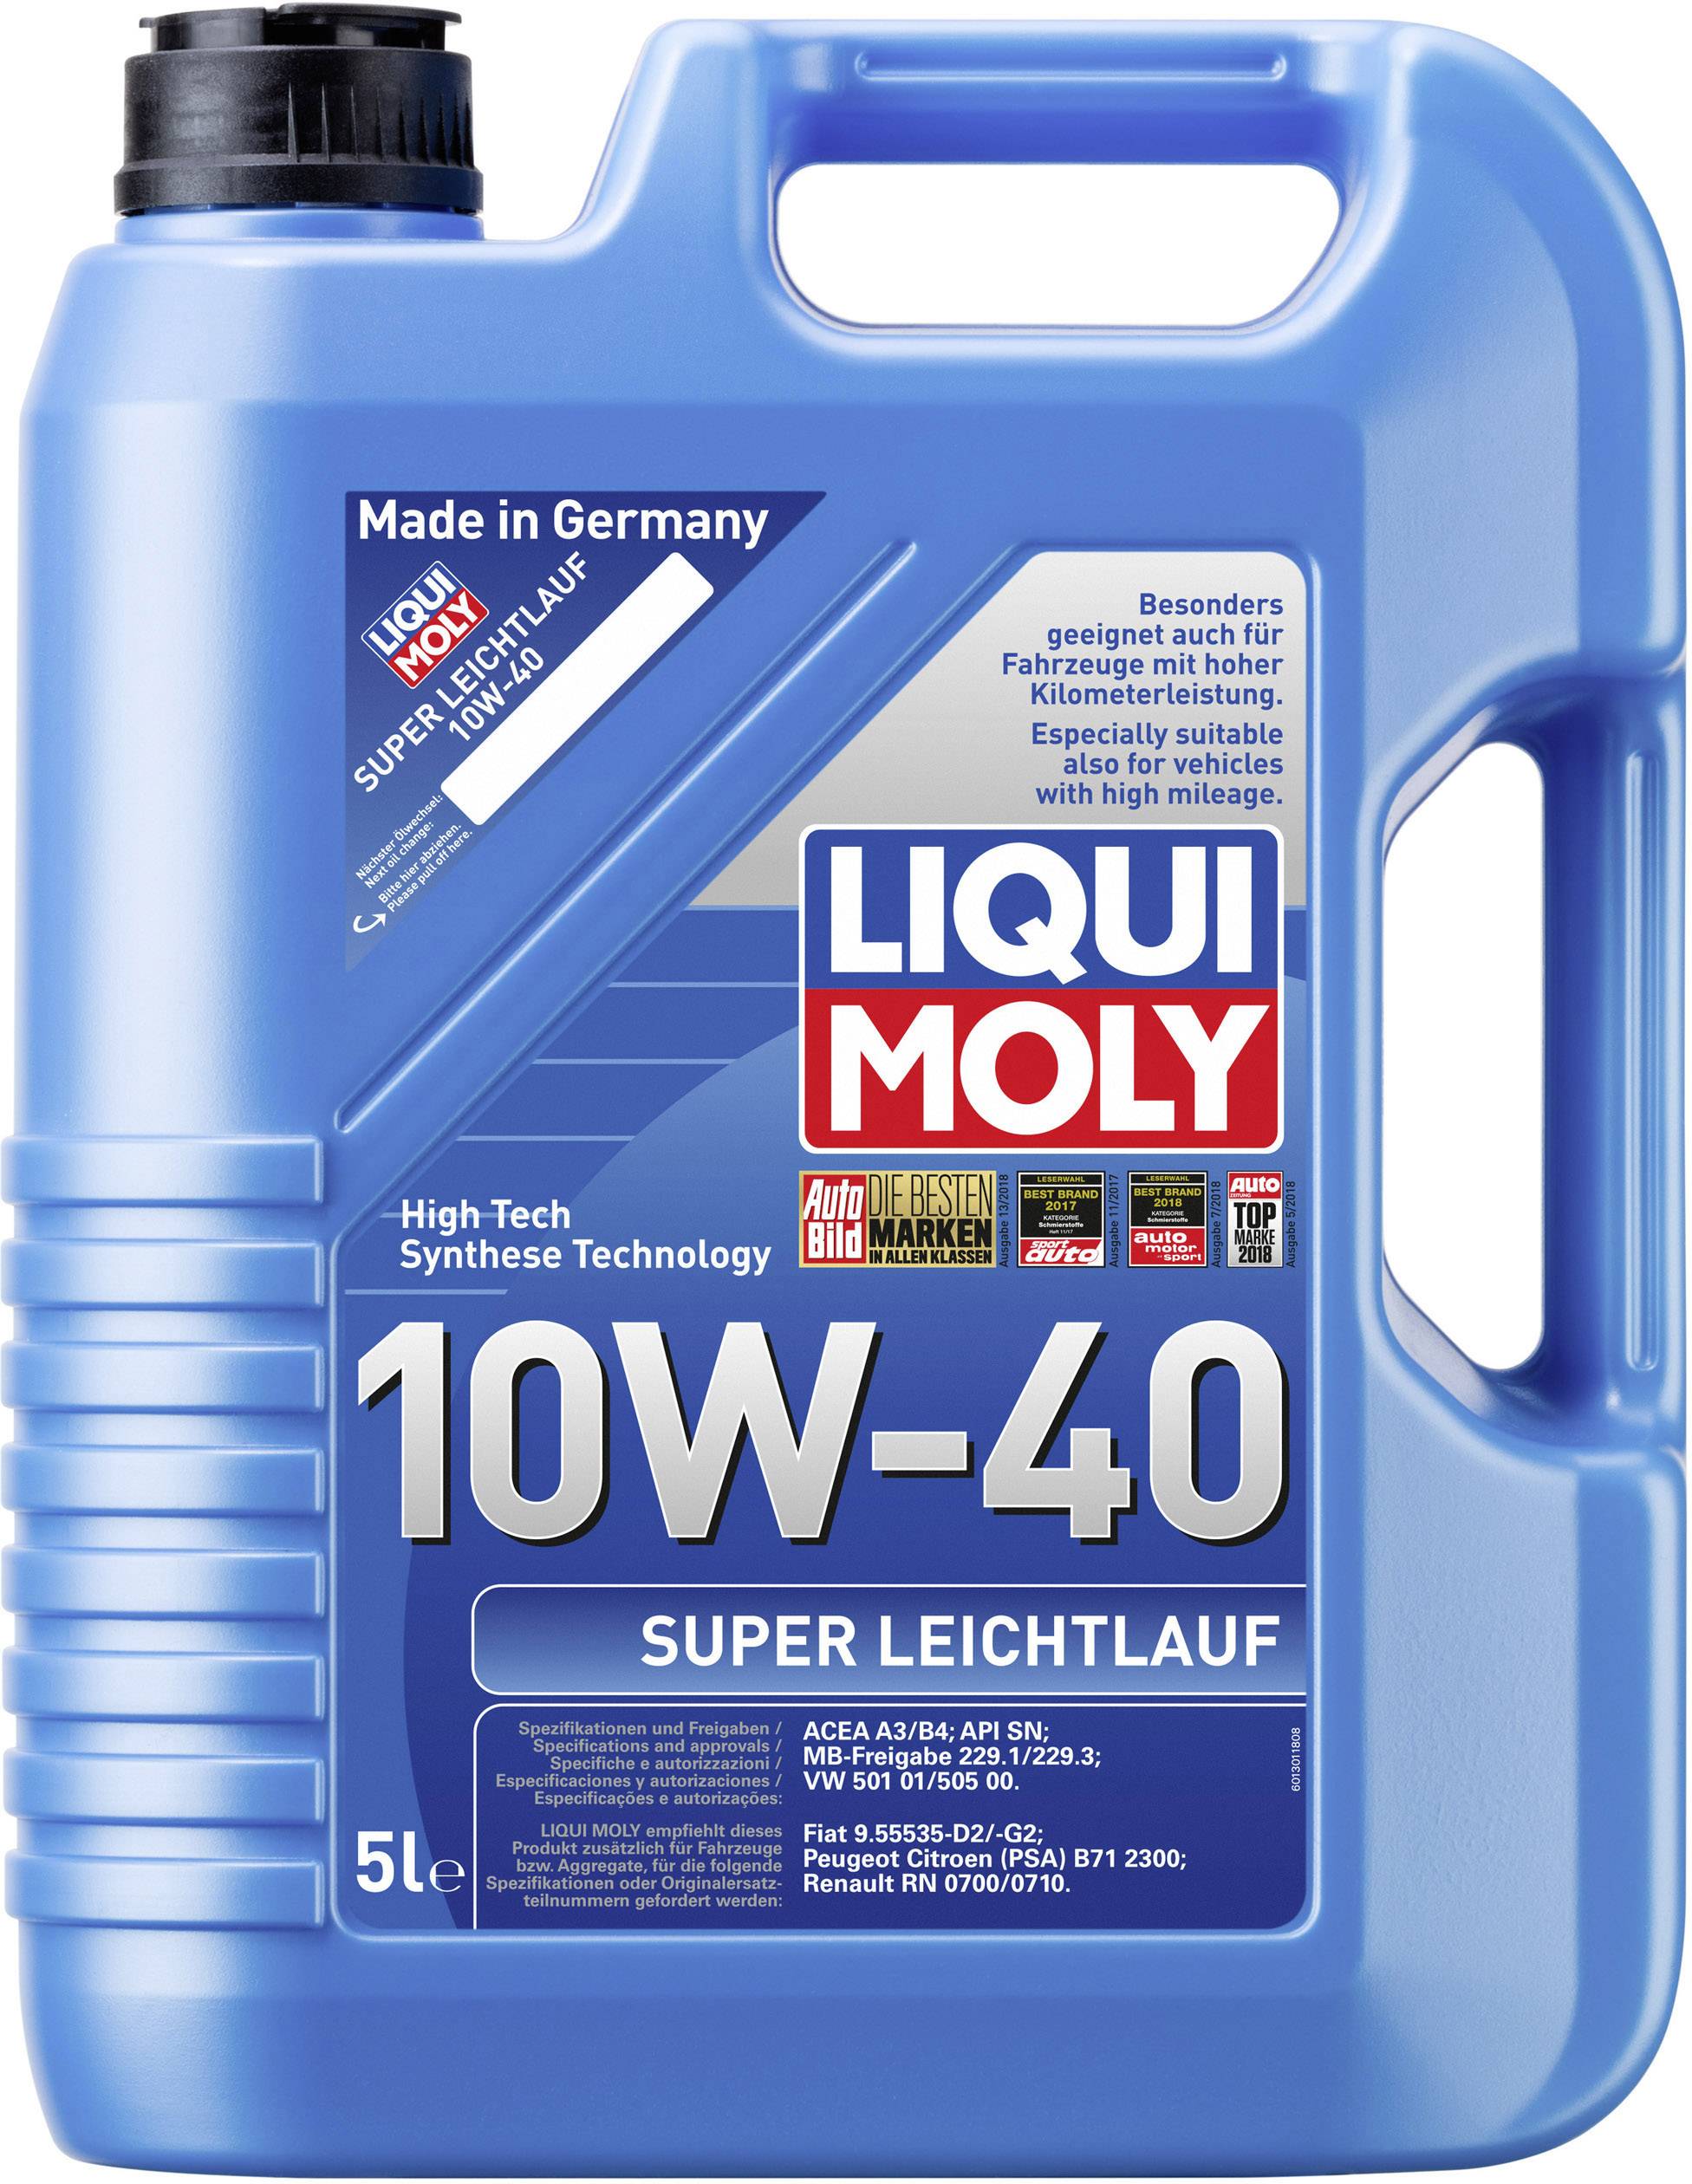 Liqui Moly 10w40 review